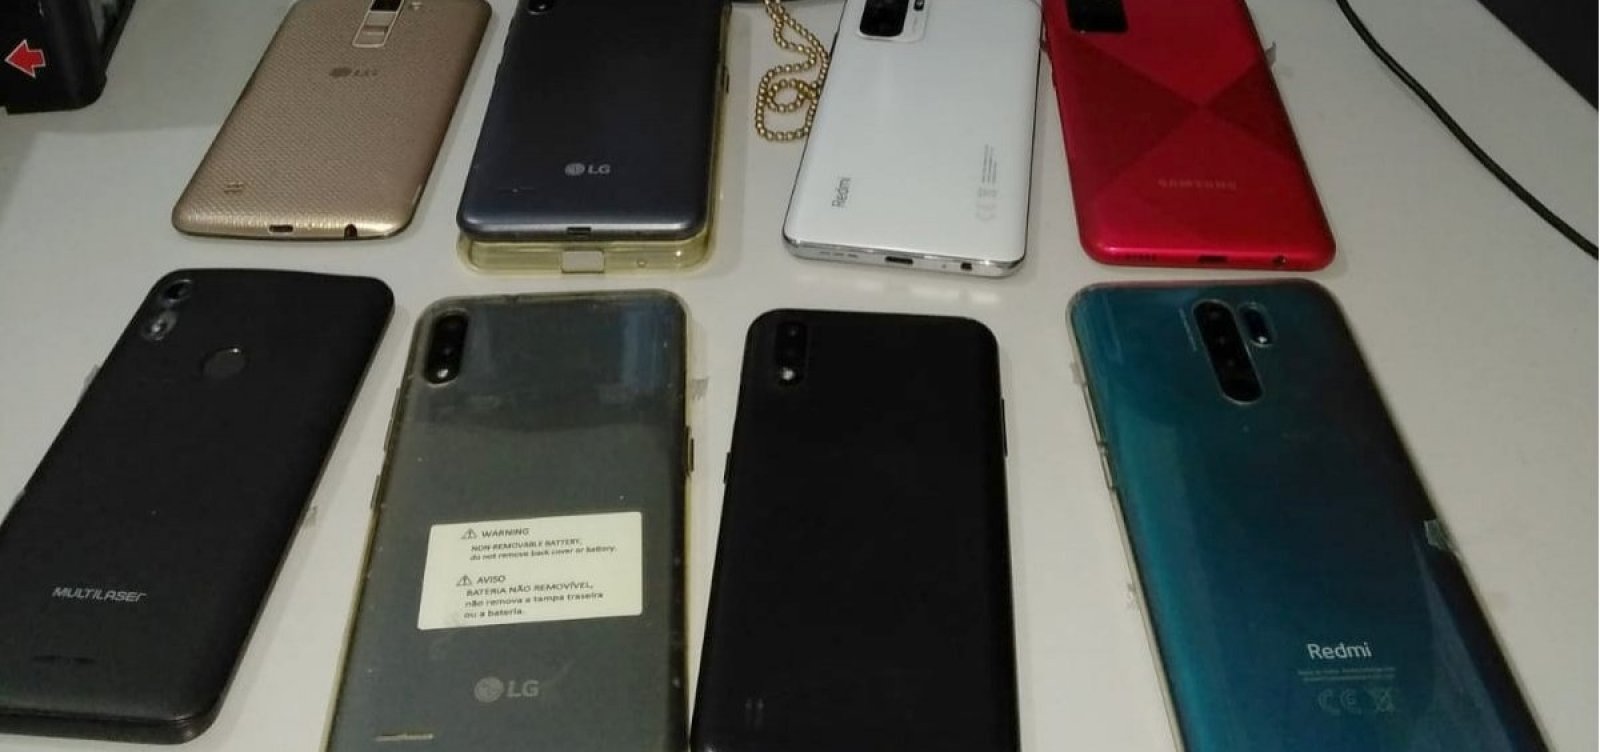 Polícia recupera oito celulares furtados ou roubados por organização criminosa em Ipirá